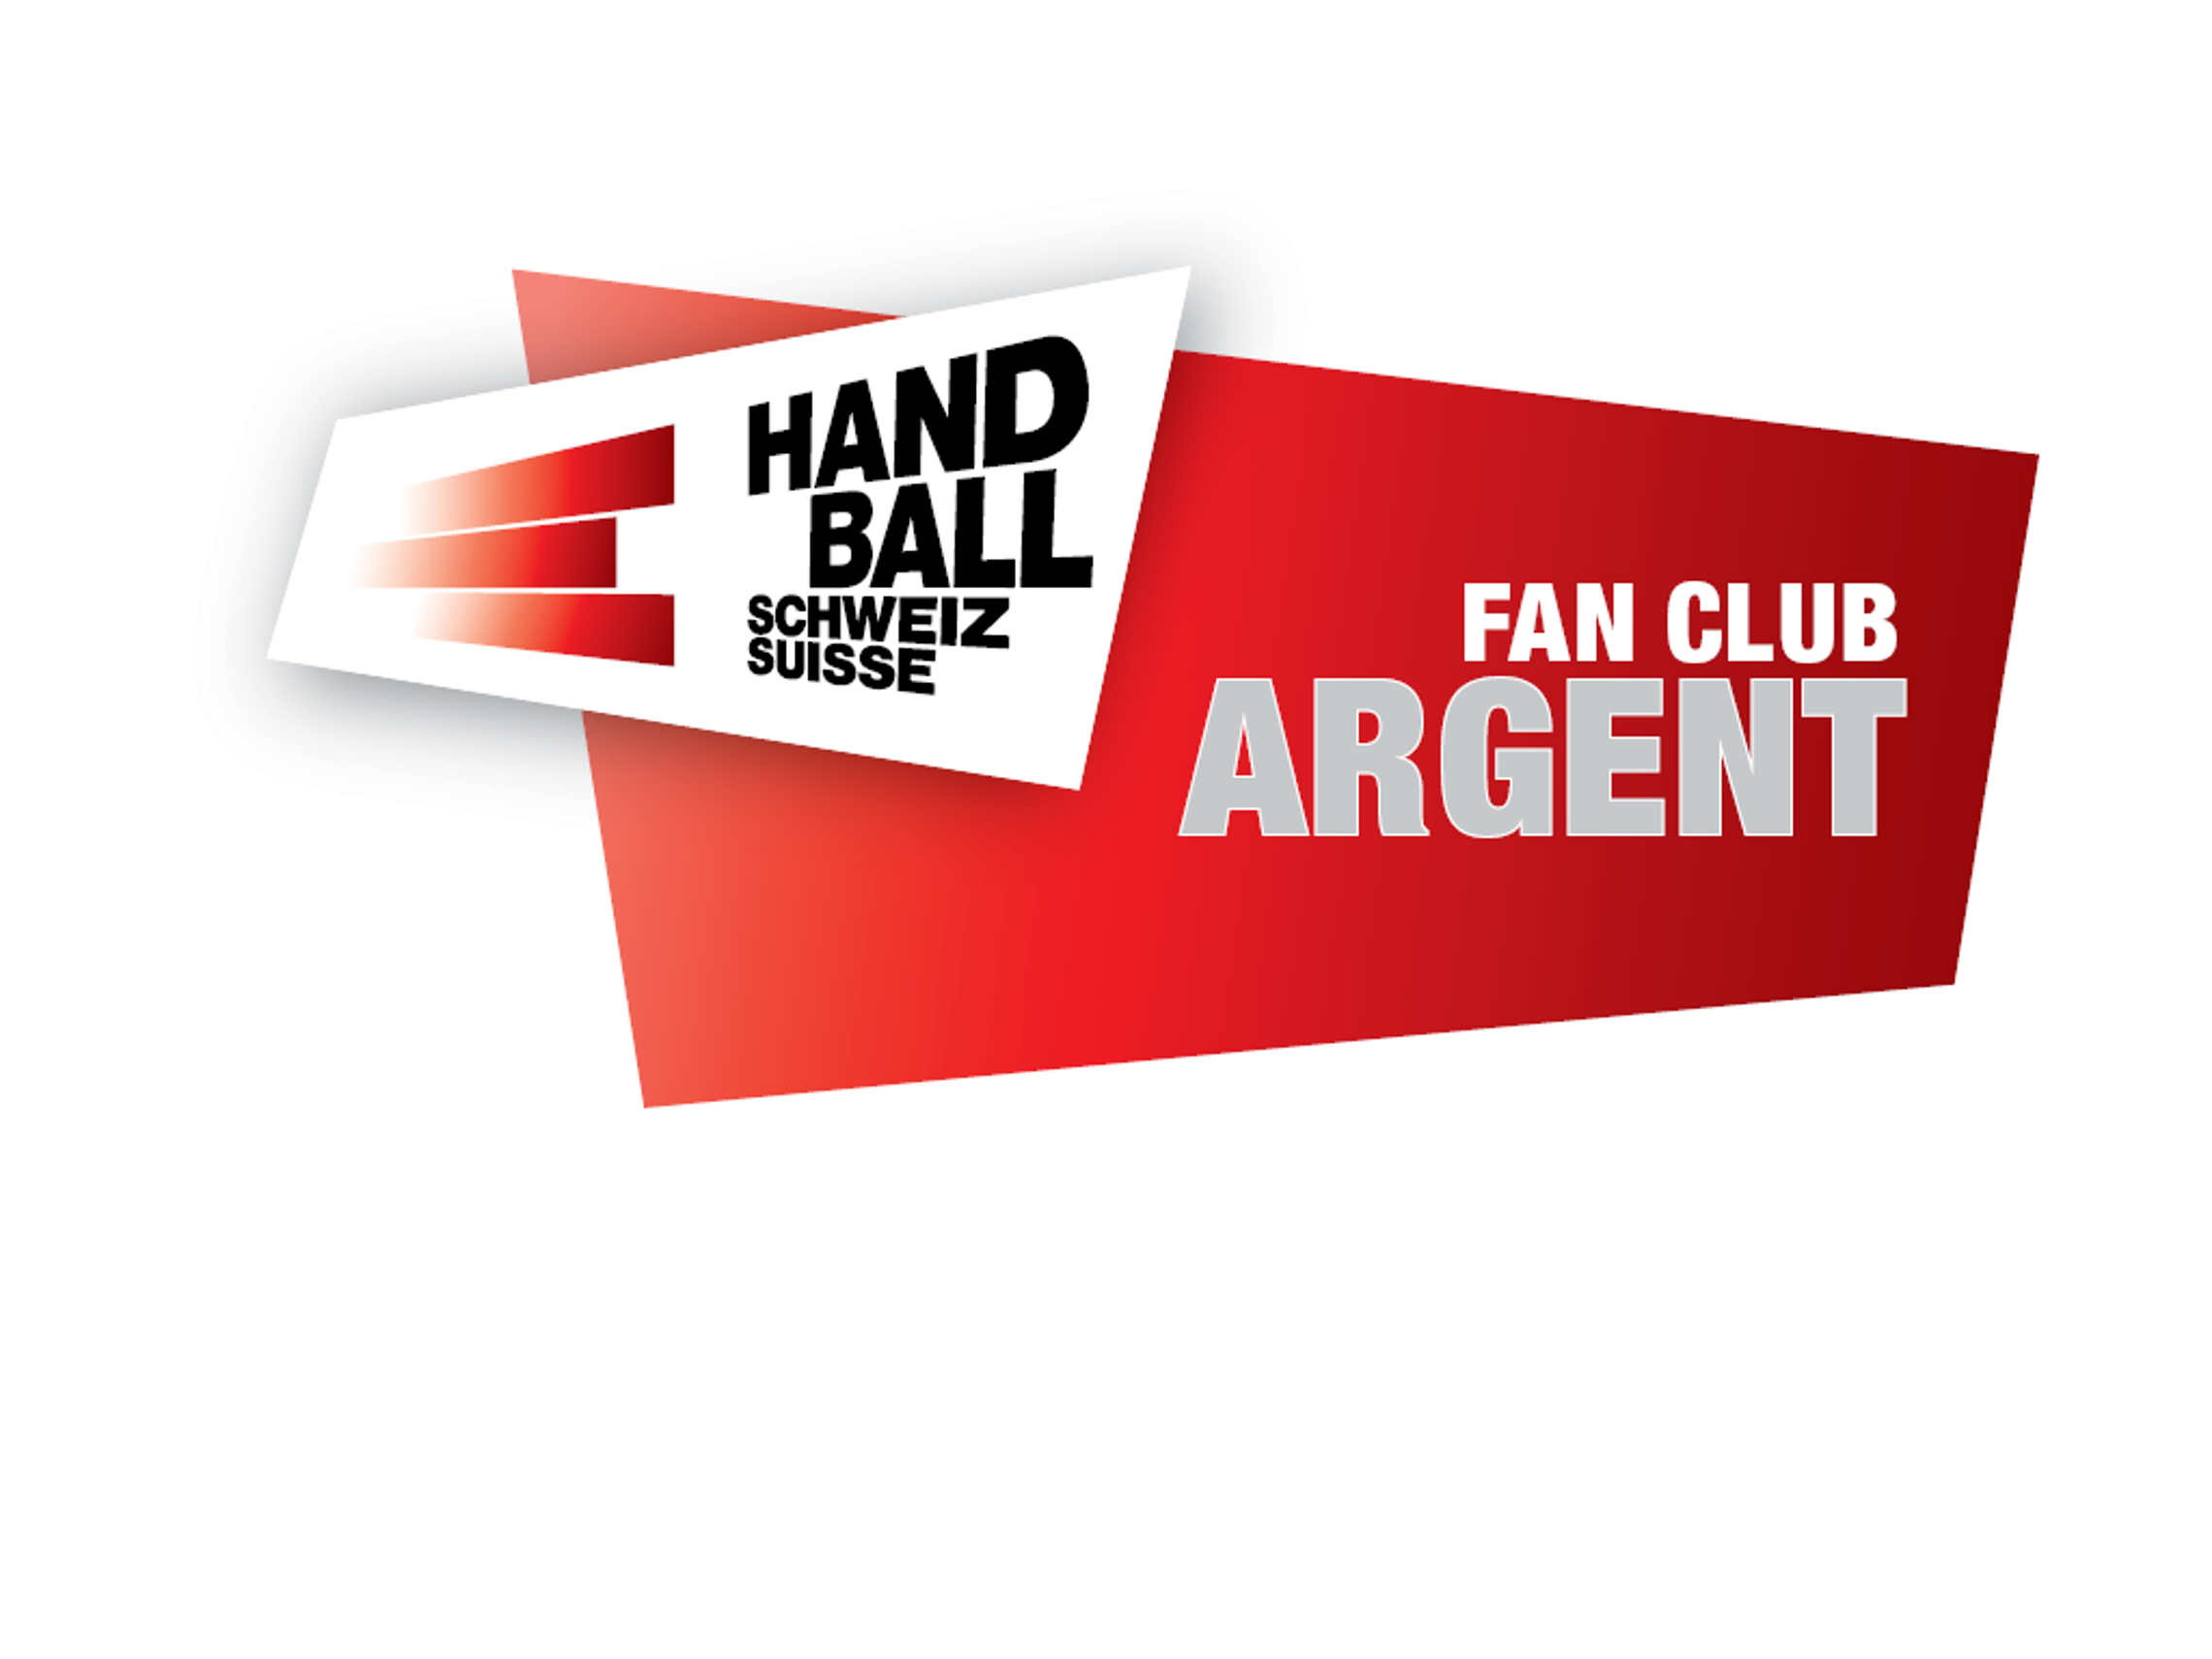 Fan club ARGENT